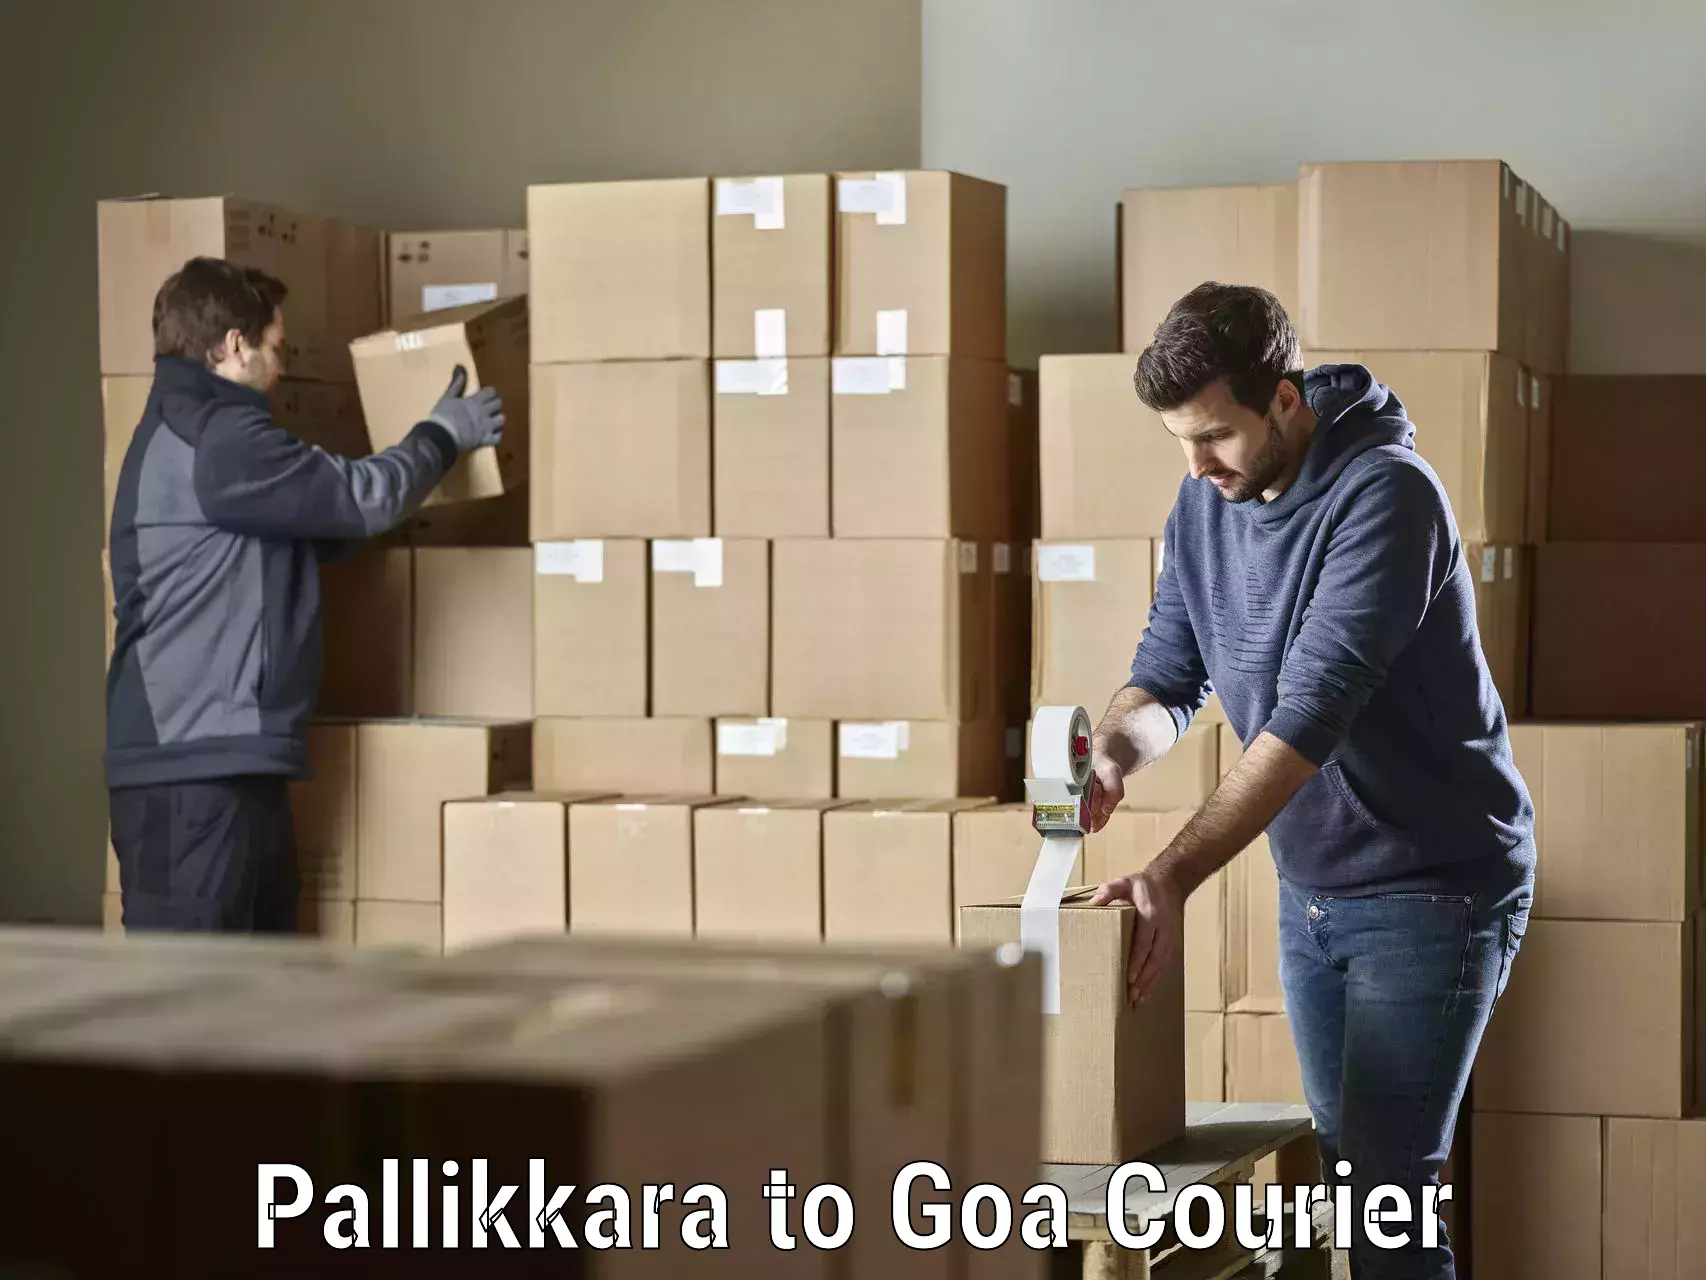 Cost-effective courier options Pallikkara to Panaji